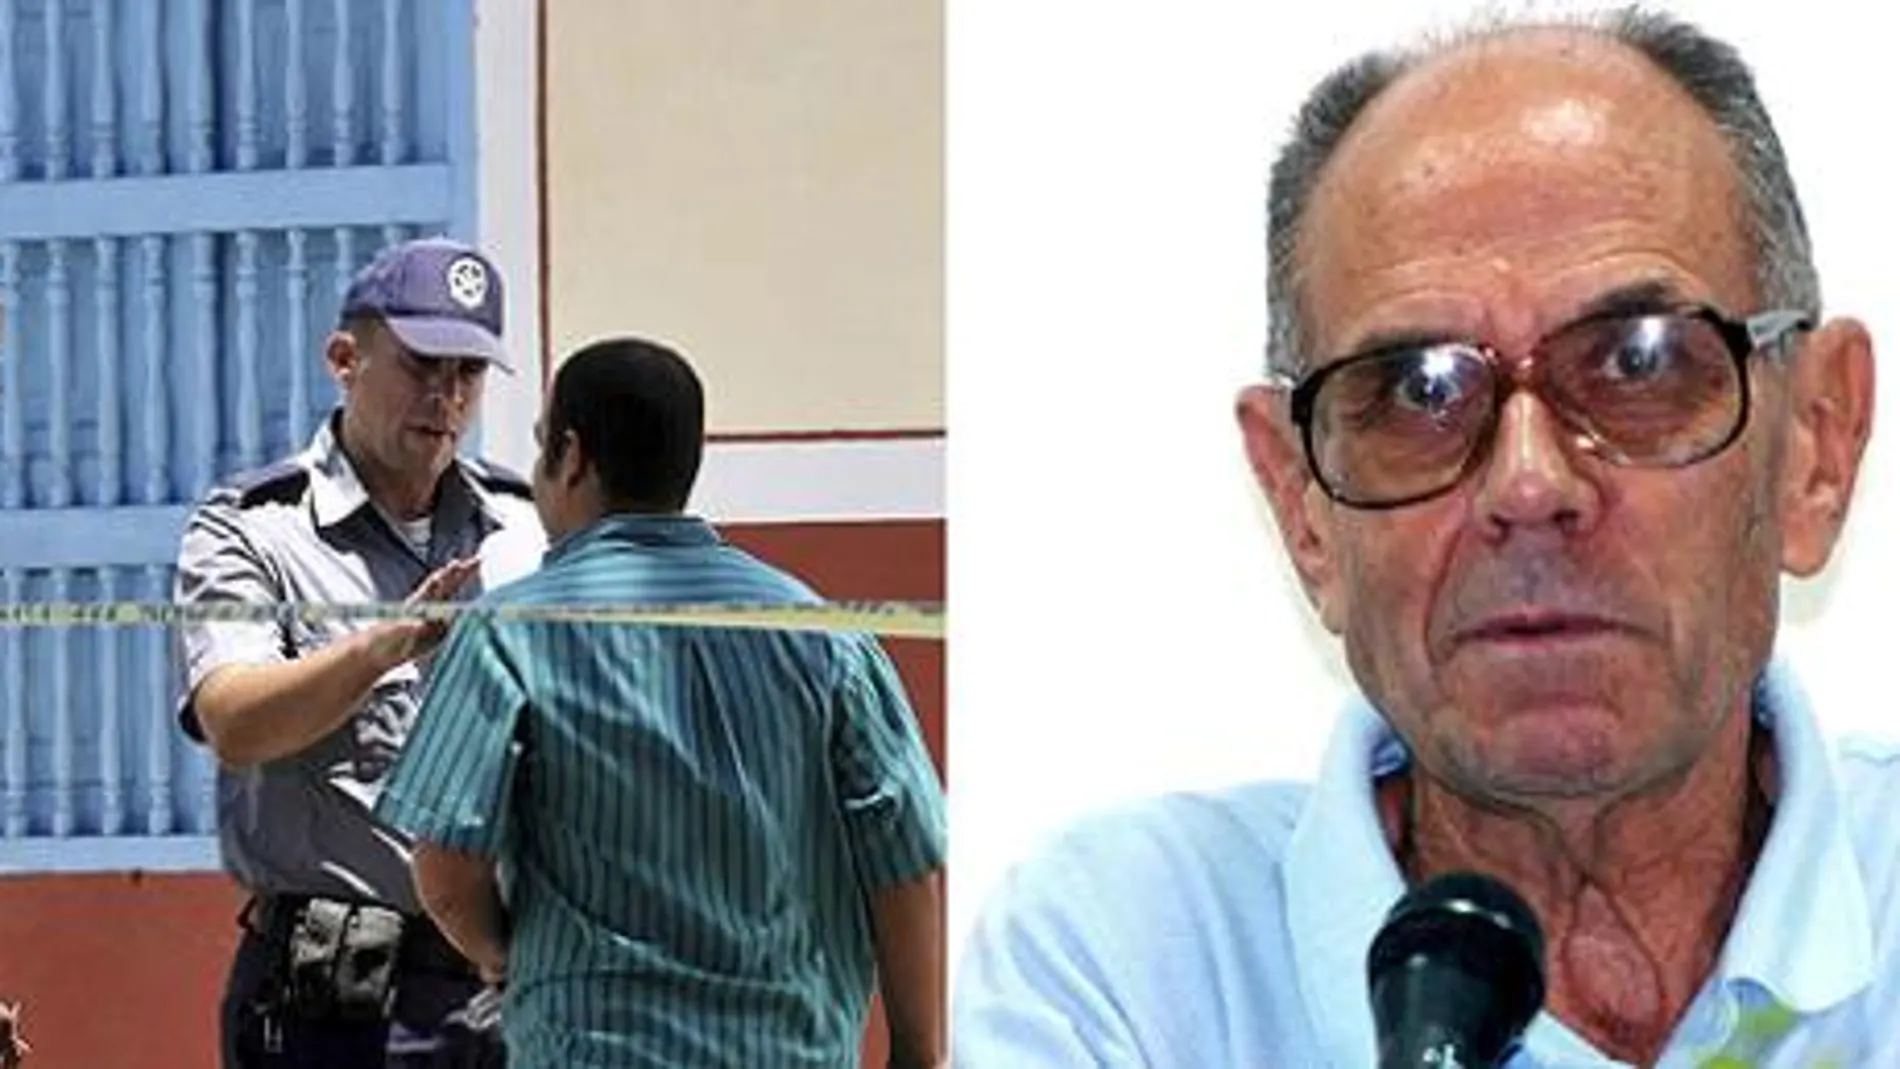 El asesinato de dos sacerdotes españoles amigos en cinco meses conmocionan La Habana